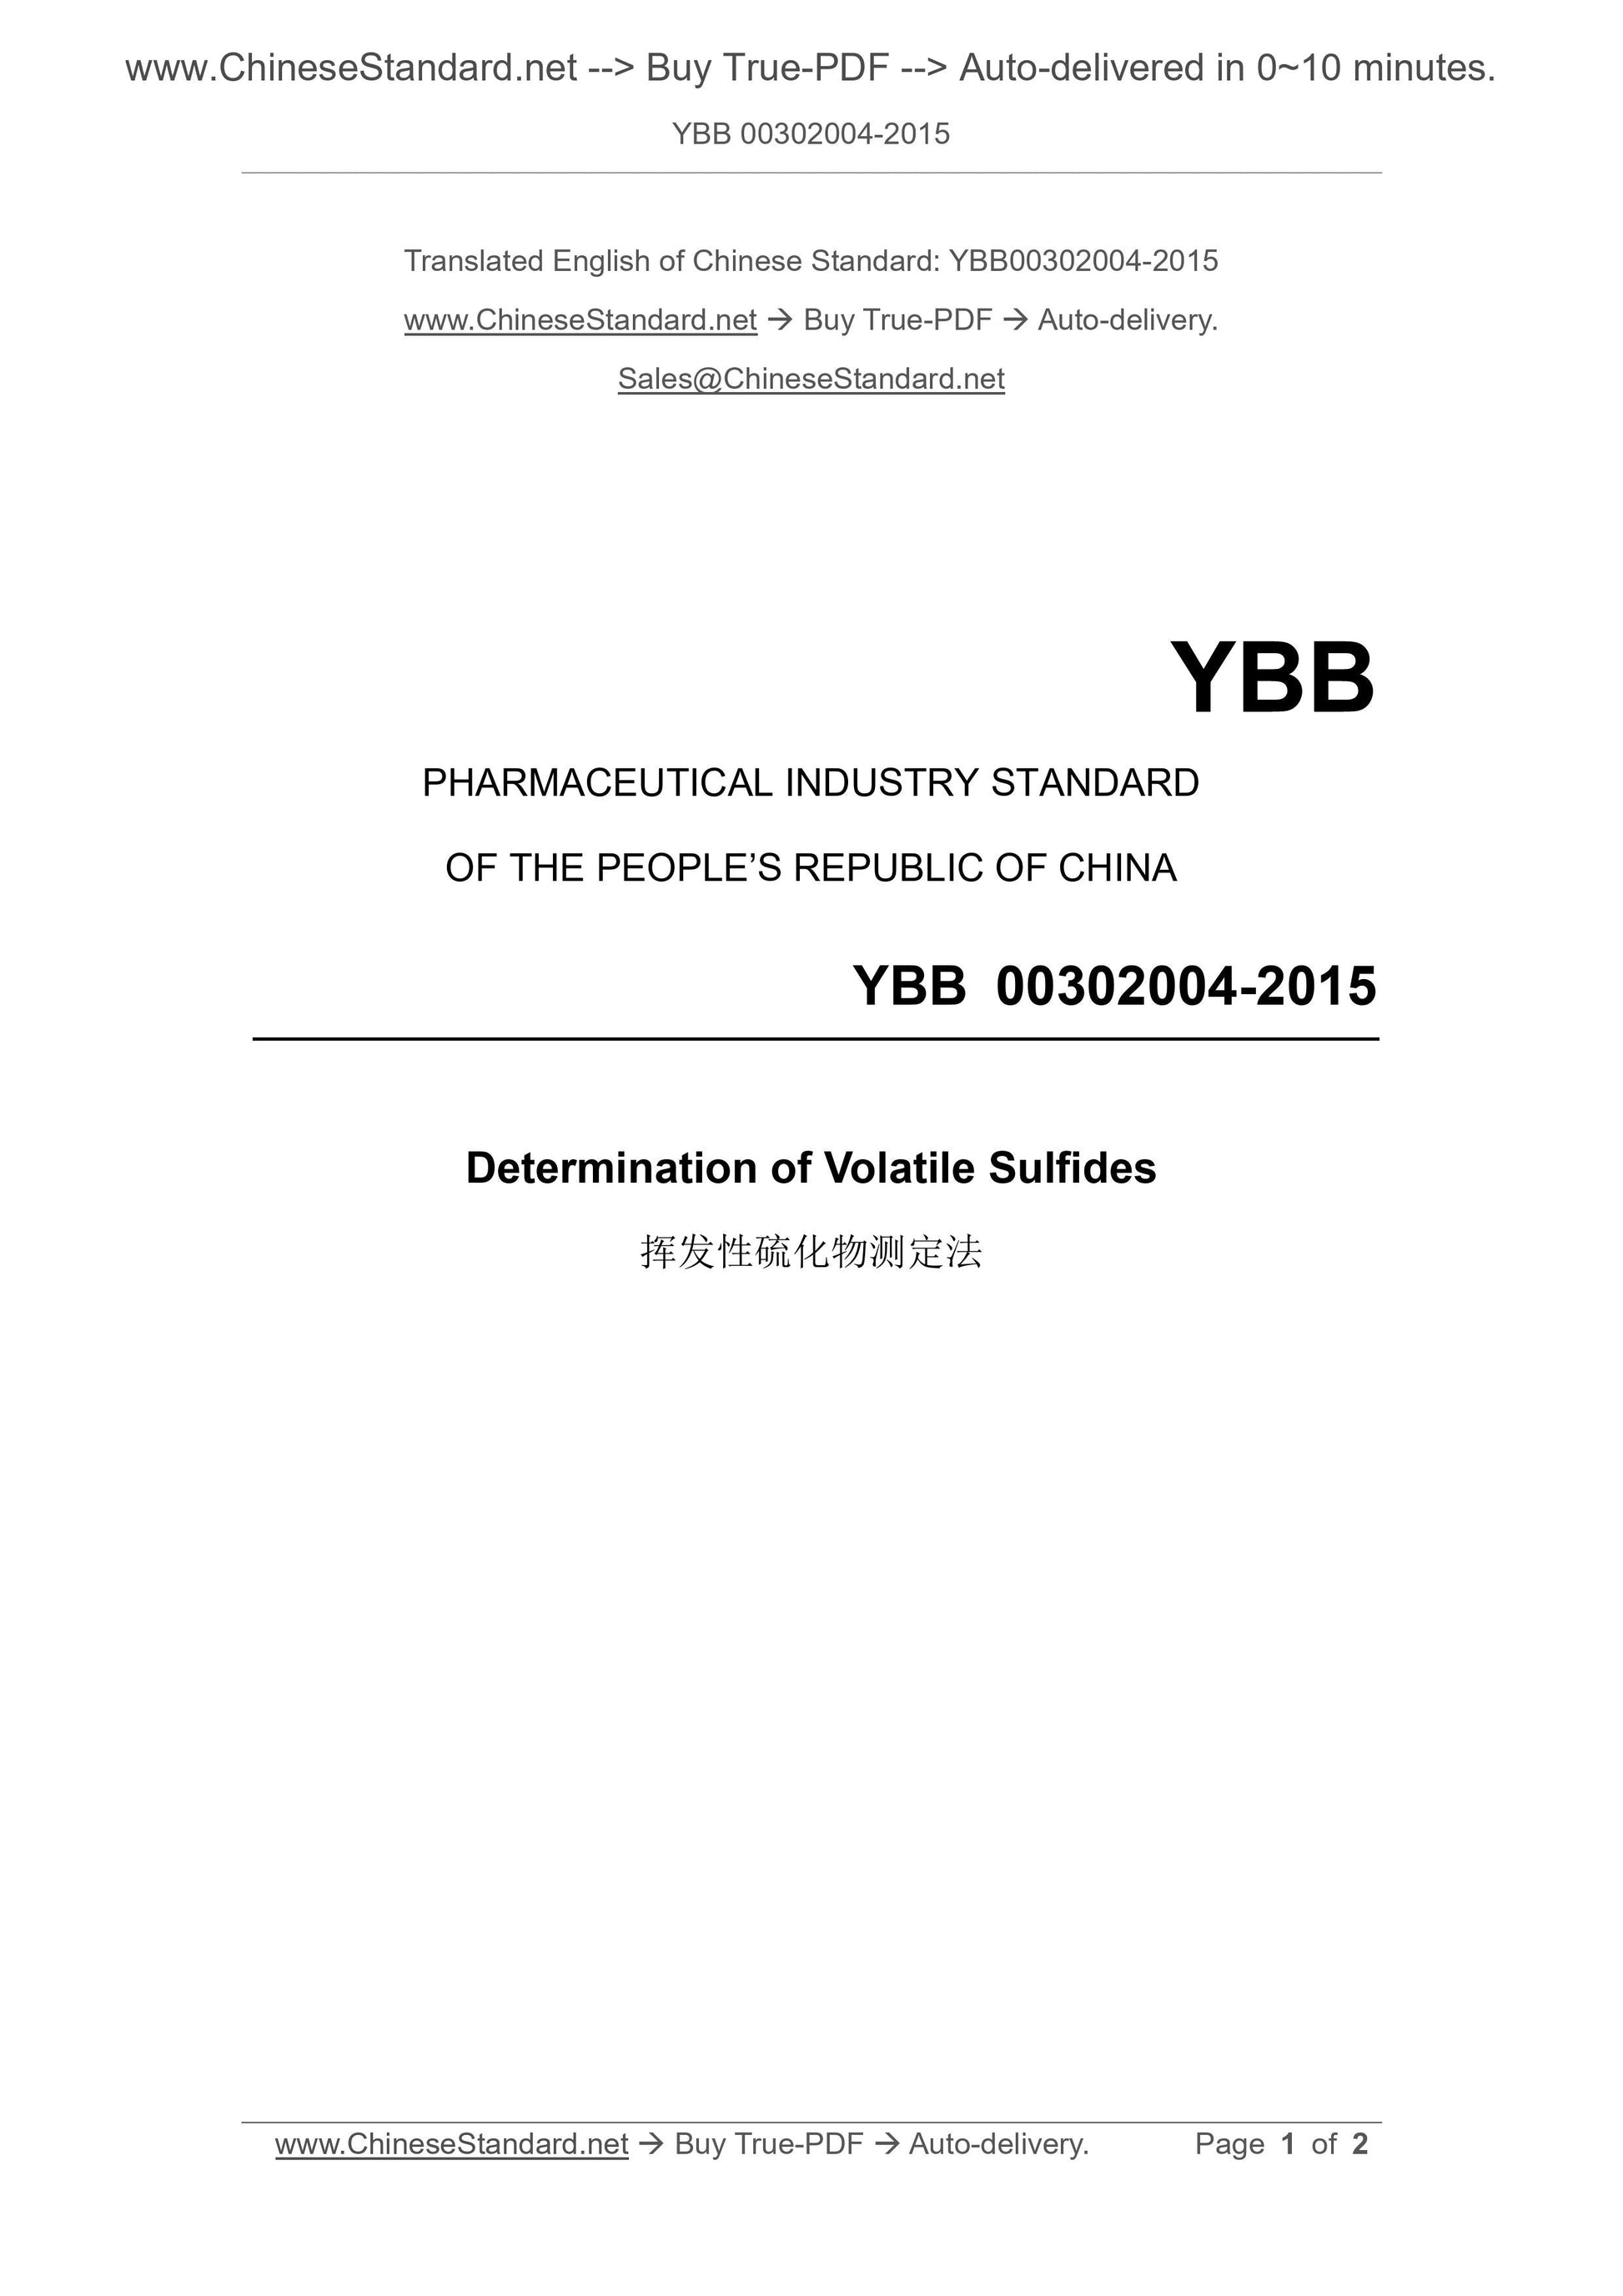 YBB 00302004-2015 Page 1